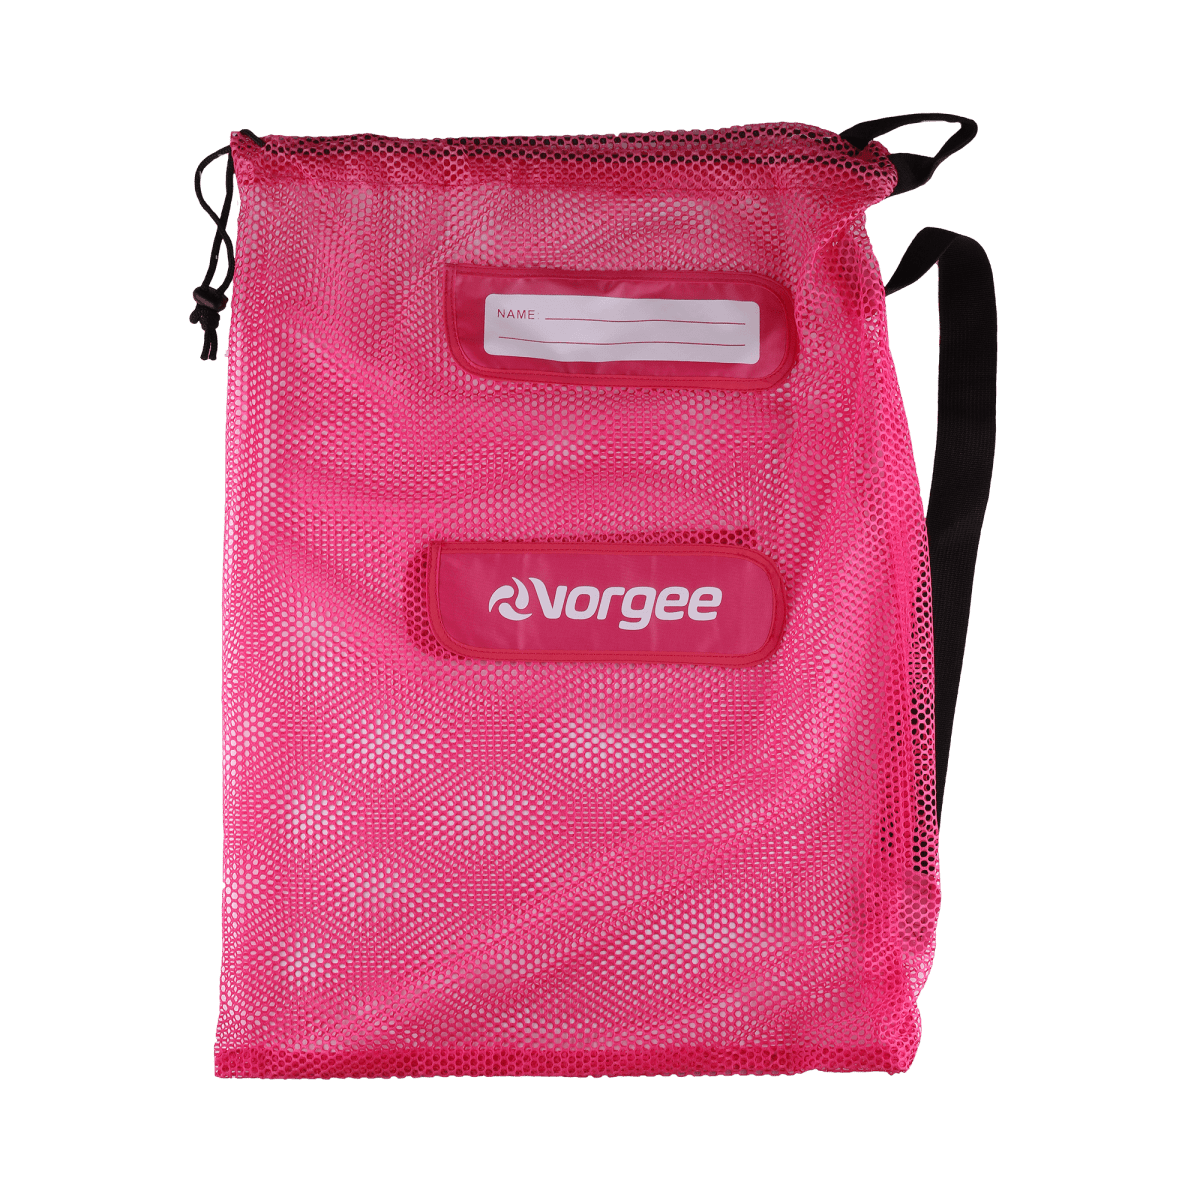 Vorgee Mesh Swim Equipment Bag by Vorgee - Ocean Junction